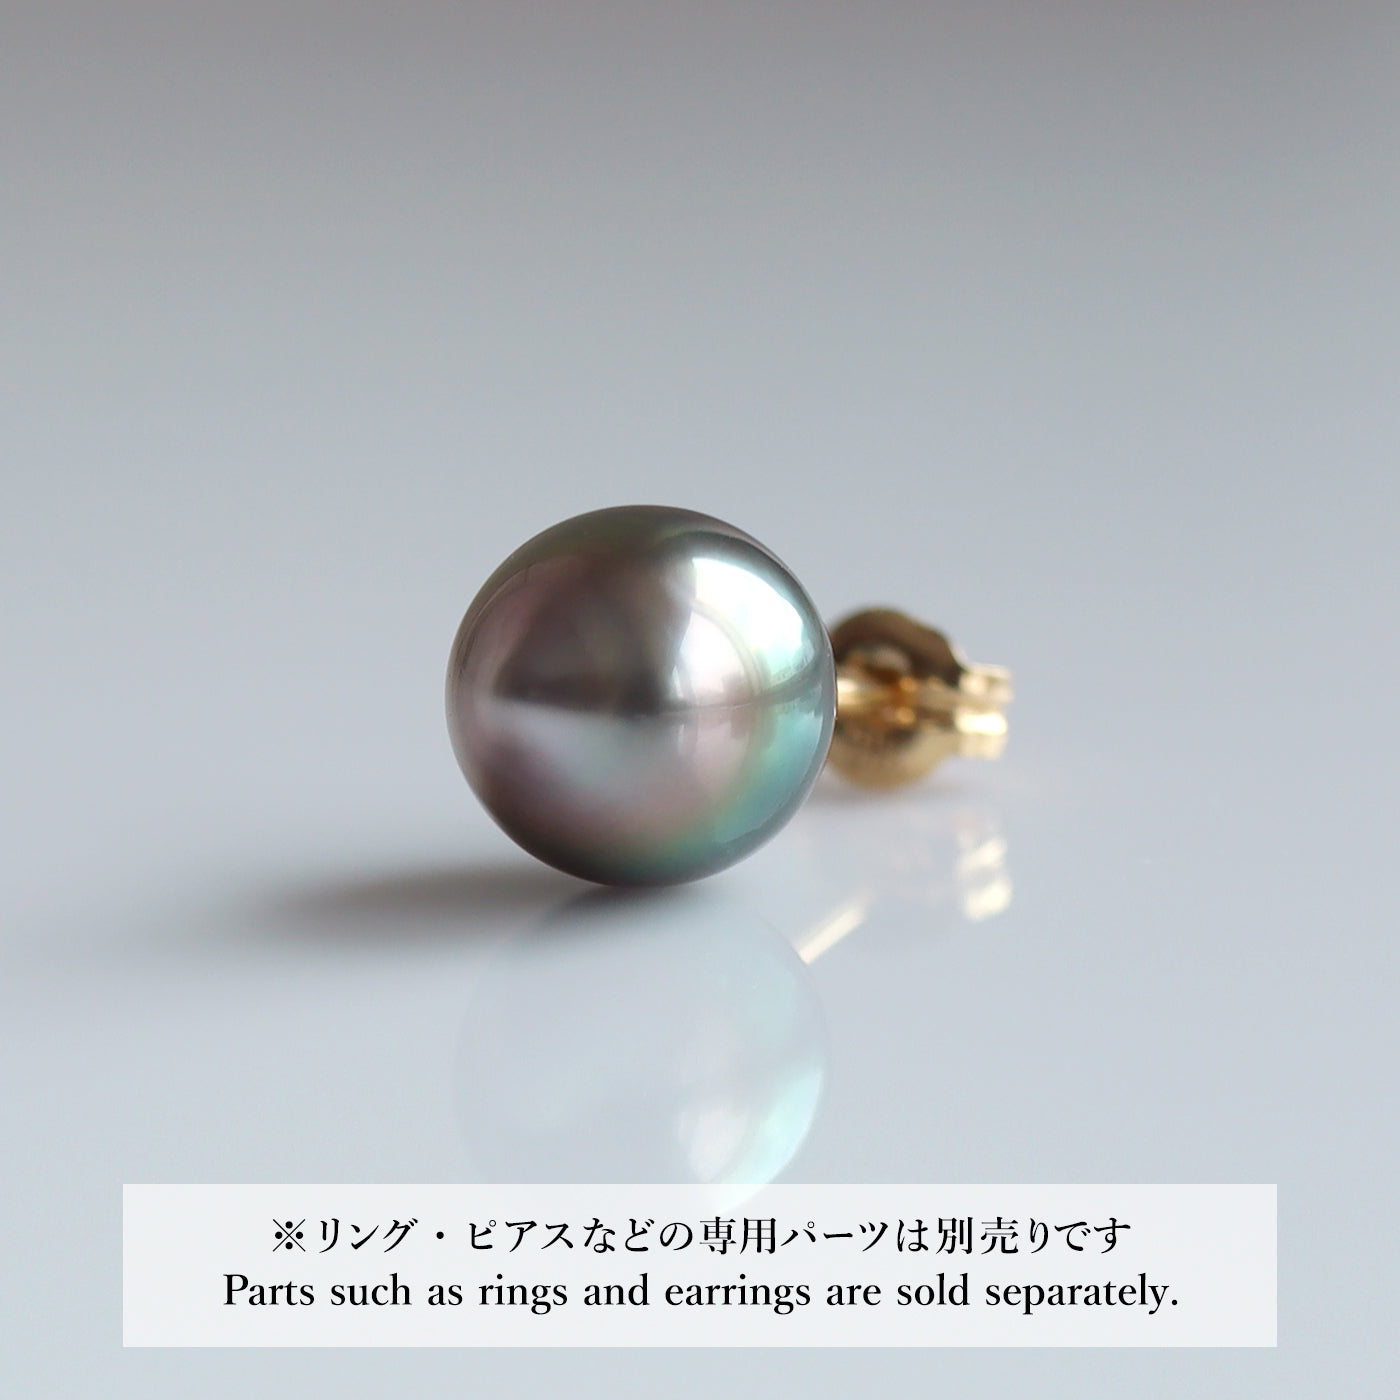 【COLLECTIBLE】 Tahitian Pearl (No. CT31081)